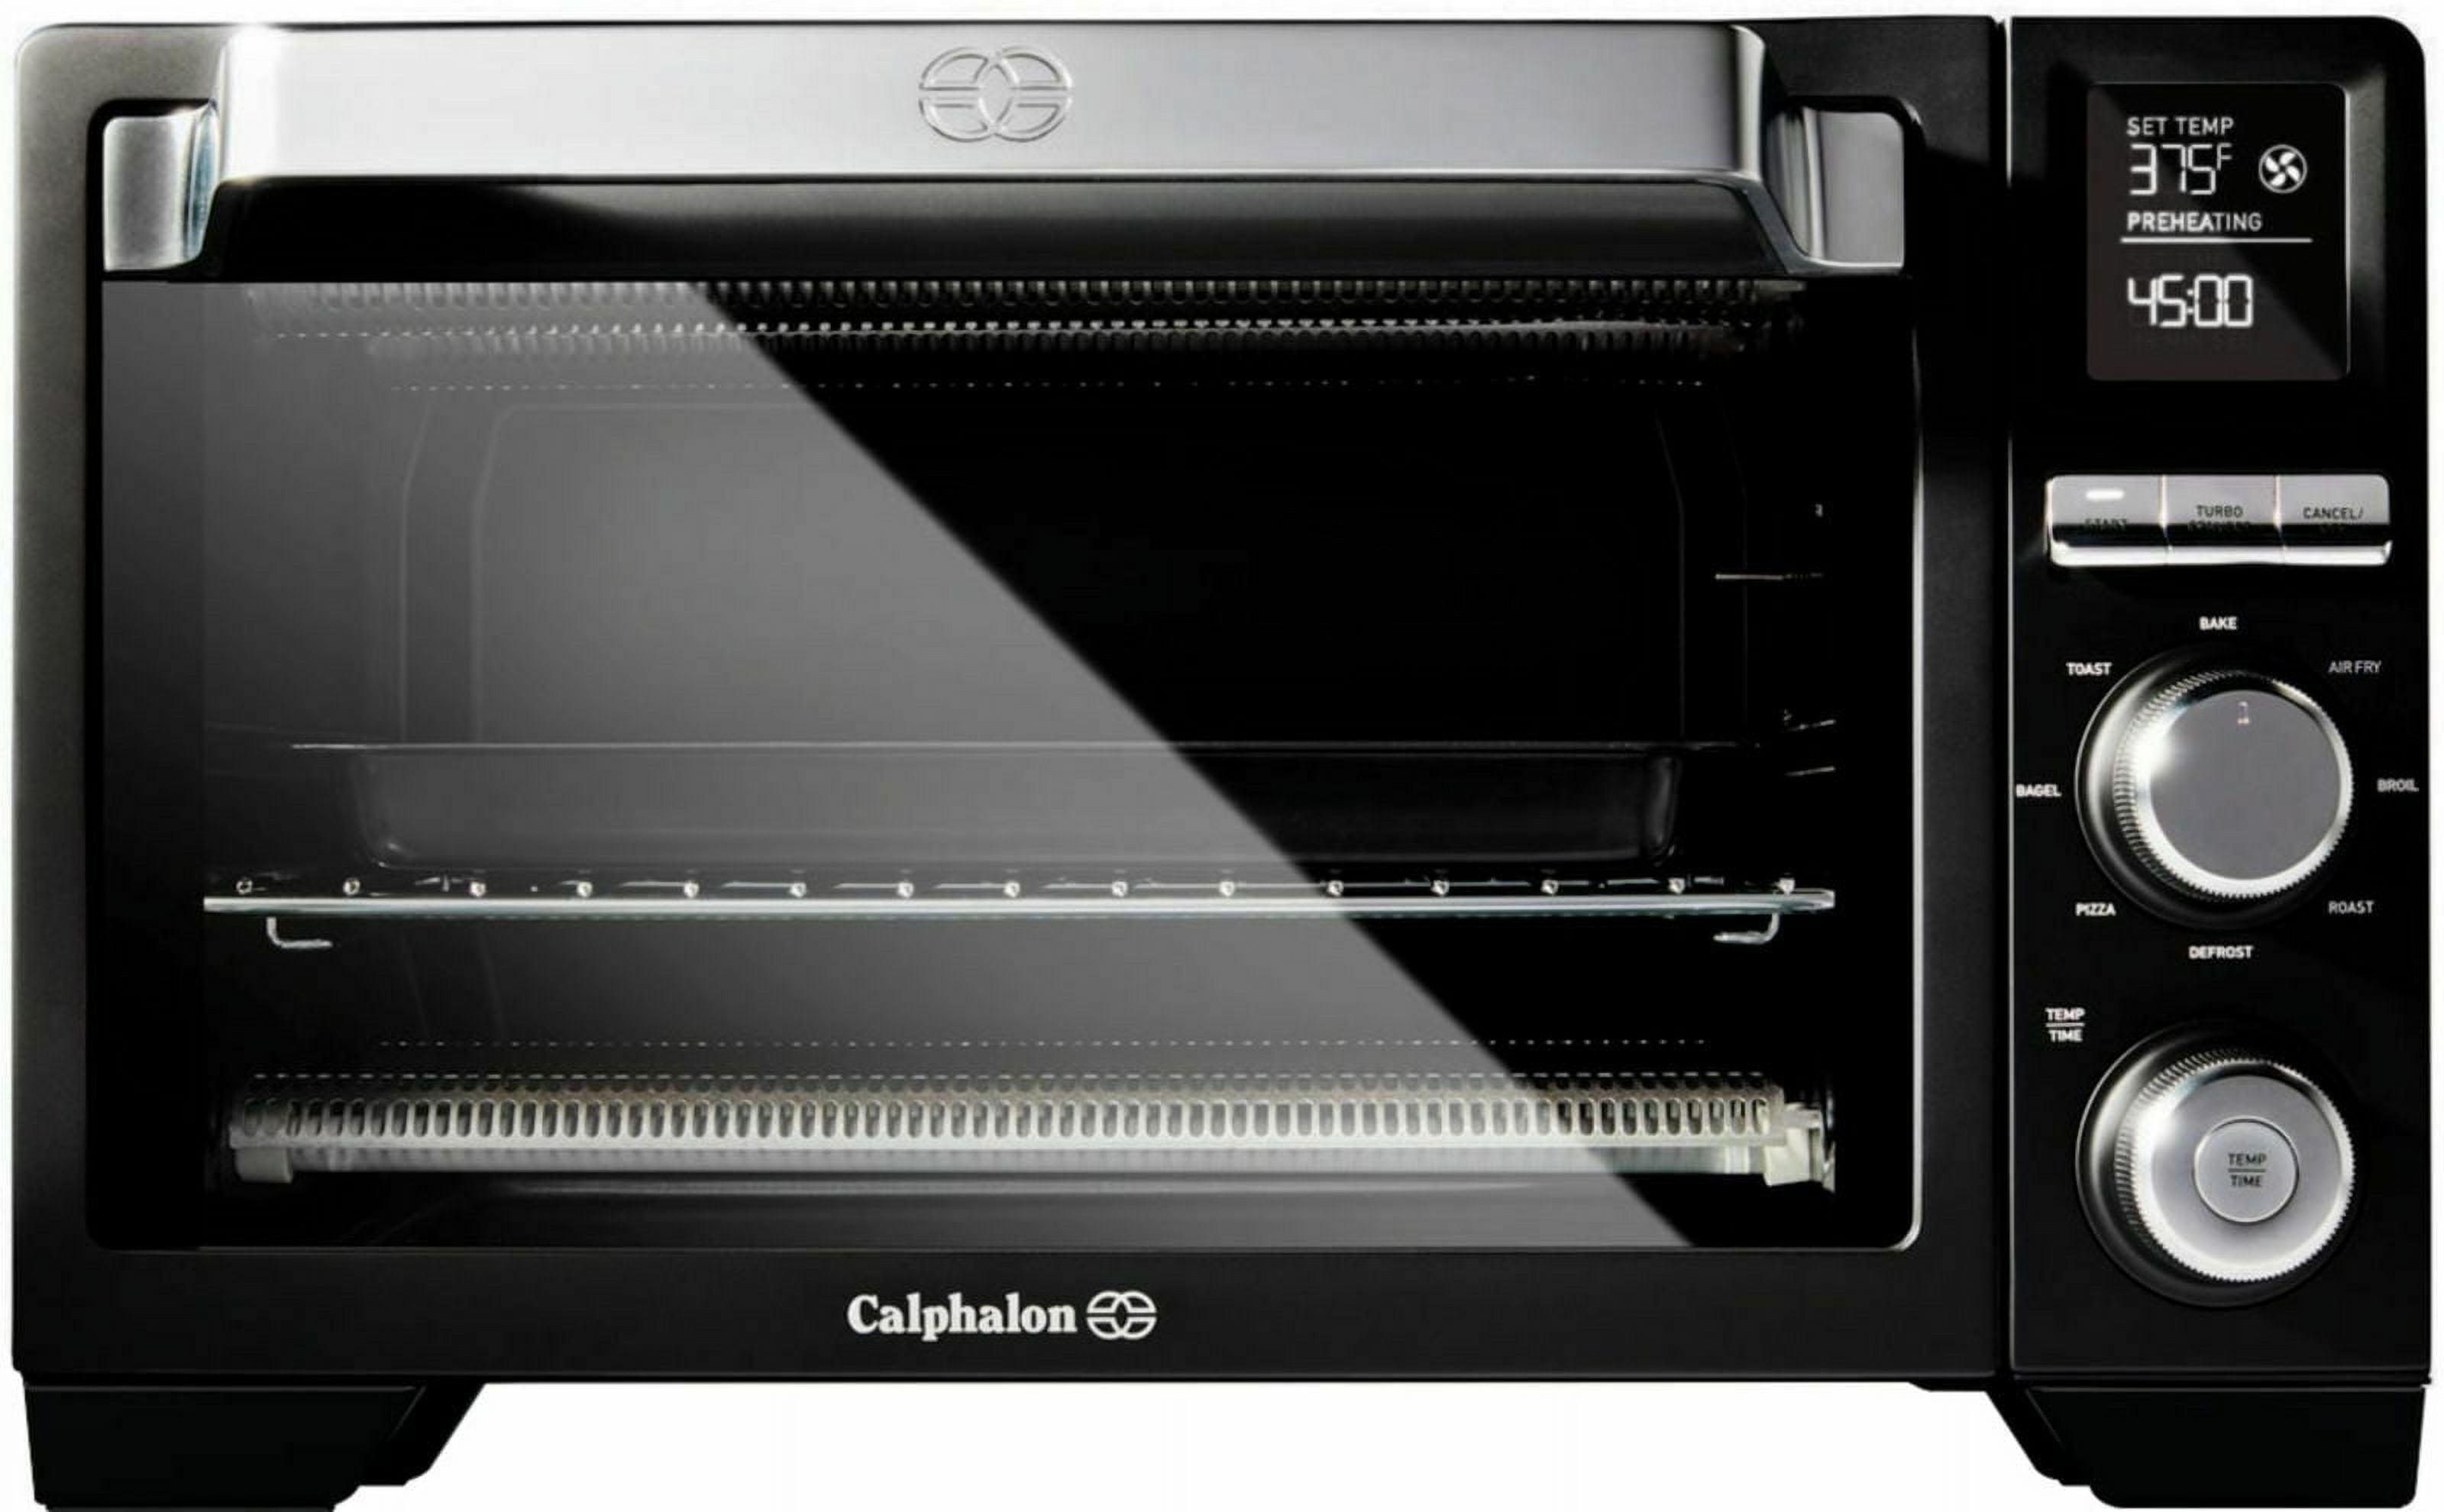 Calphalon Precision Air Fry Convection Oven Countertop Toaster Oven - Black